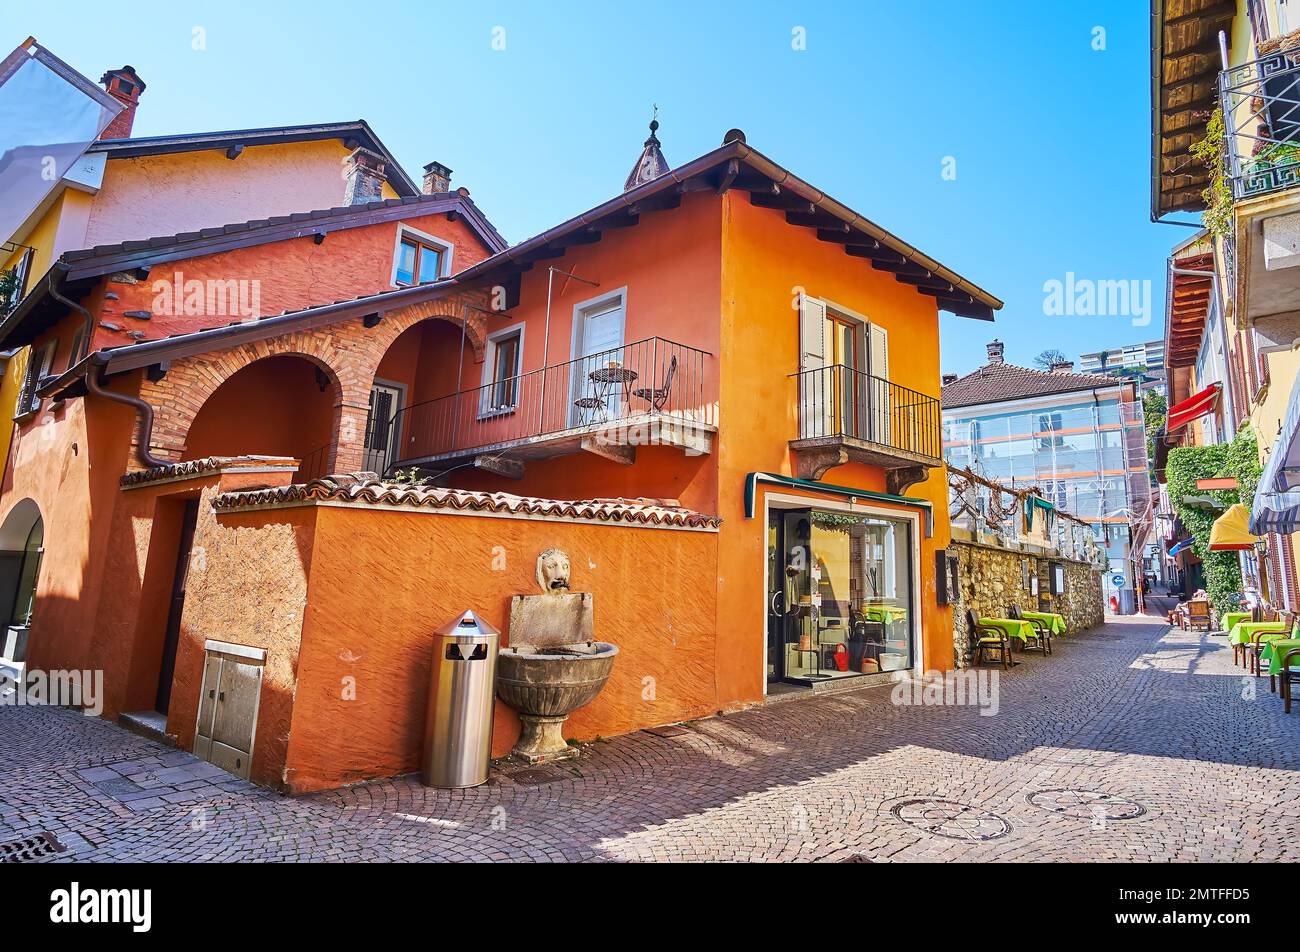 Casas históricas con pequeños cafés, tiendas, hoteles en el casco antiguo de Ascona, Suiza Foto de stock